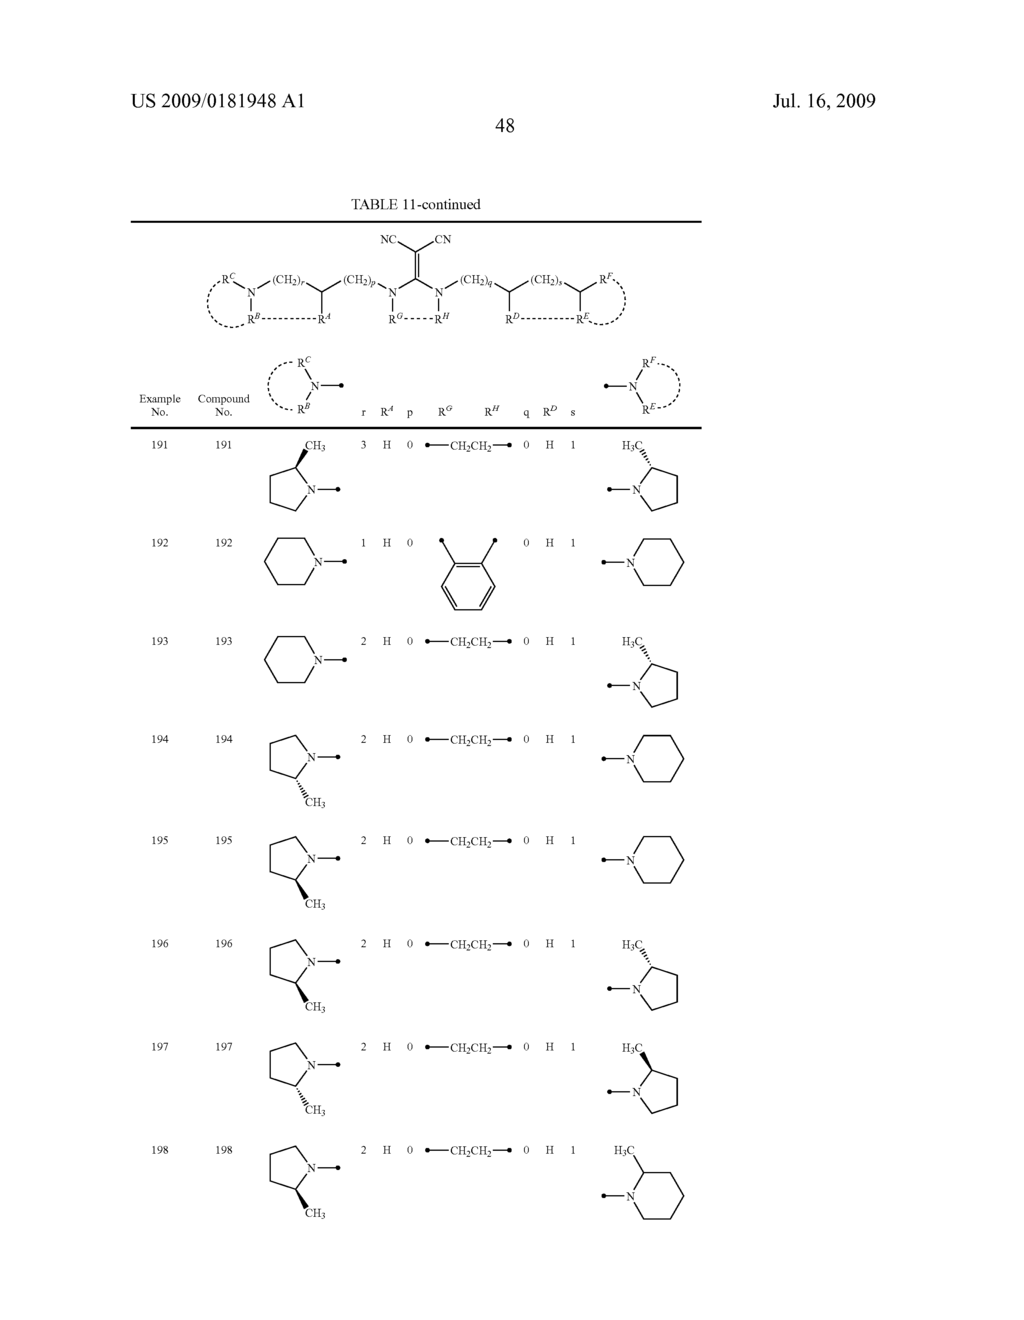 DIAMINE DERIVATIVE - diagram, schematic, and image 49